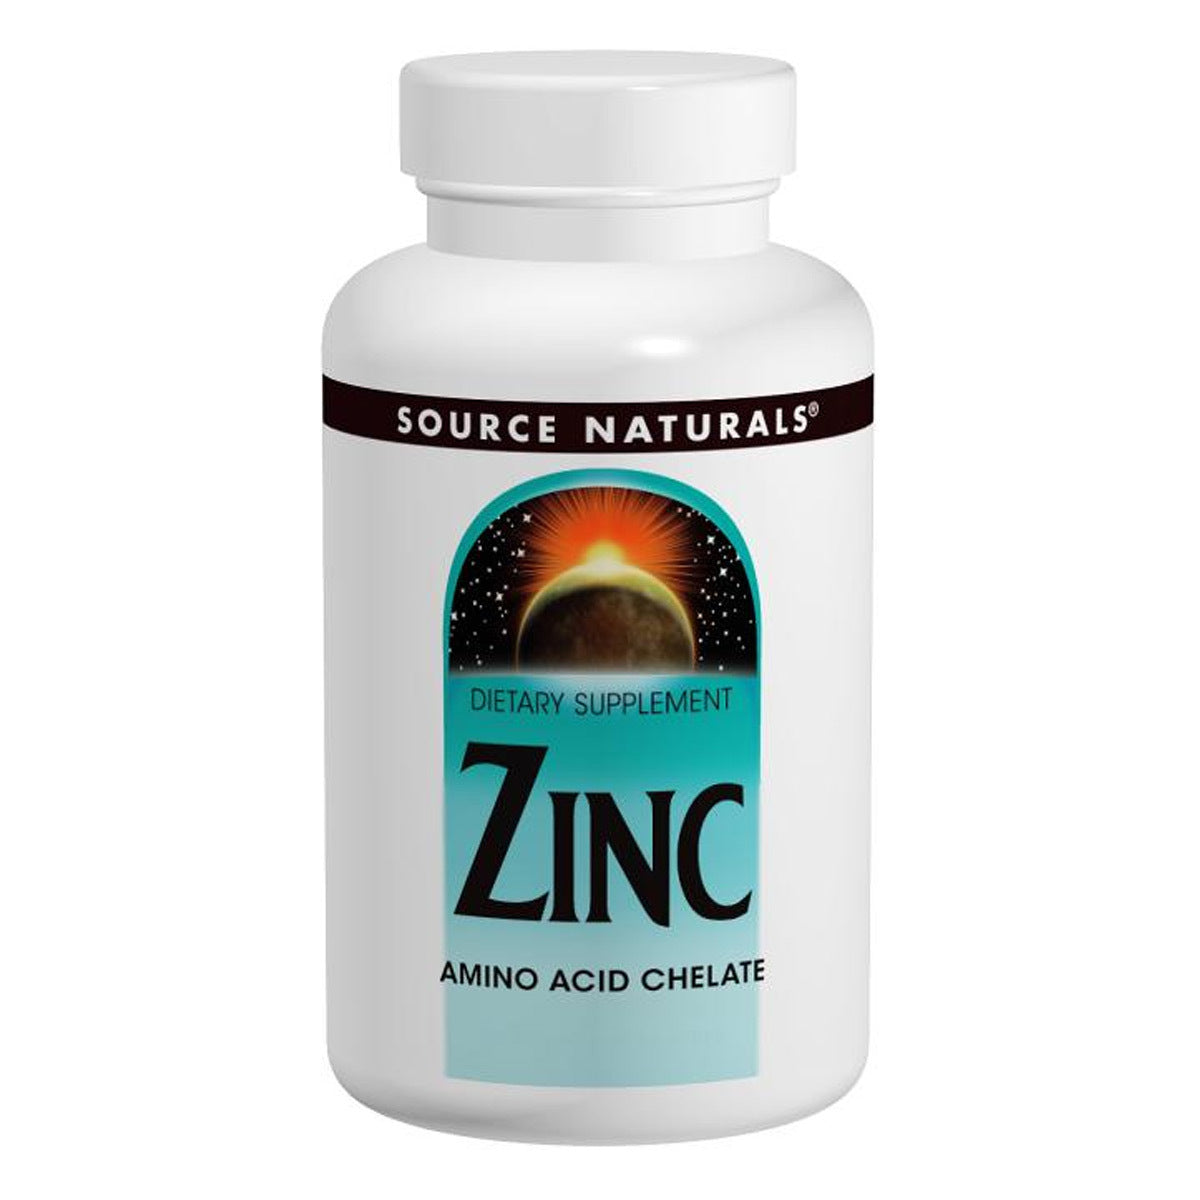 Primary image of Zinc